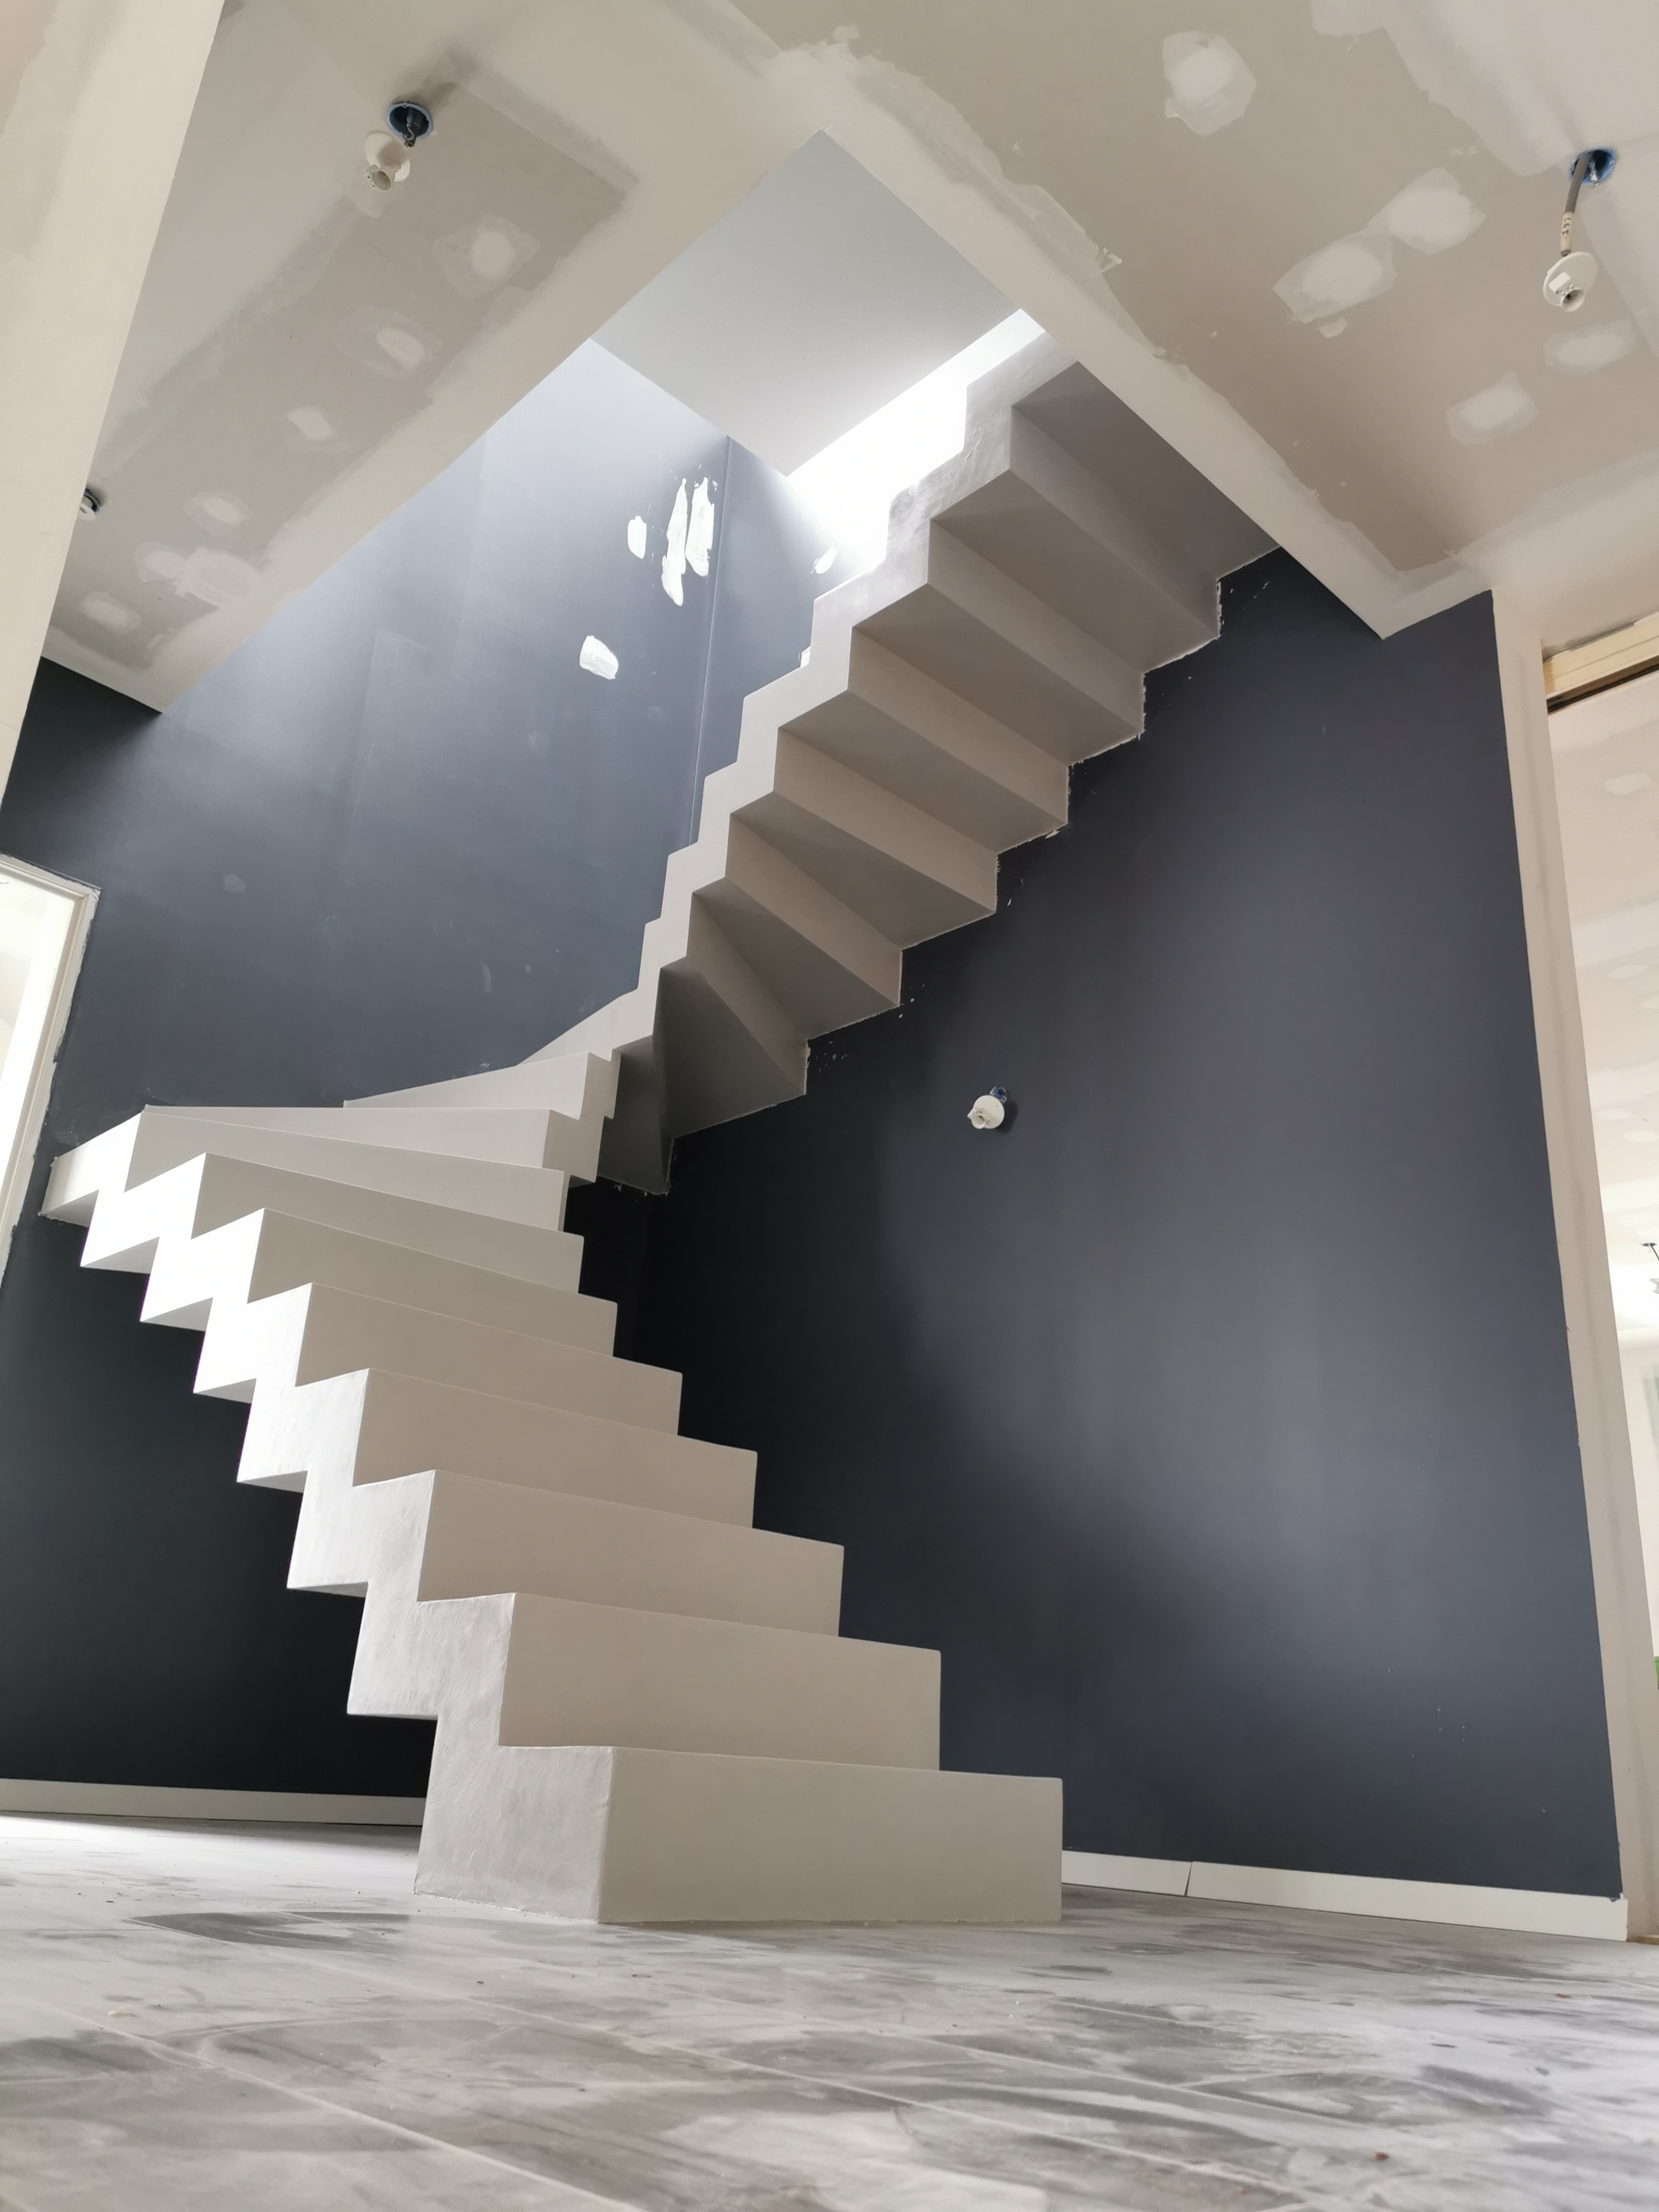 remarquable escalier crémaillère contemporain en béton ciré vernis soyeux couleur gris cendré Gradignan proche de Bordeaux en Aquitaine pour un particulier